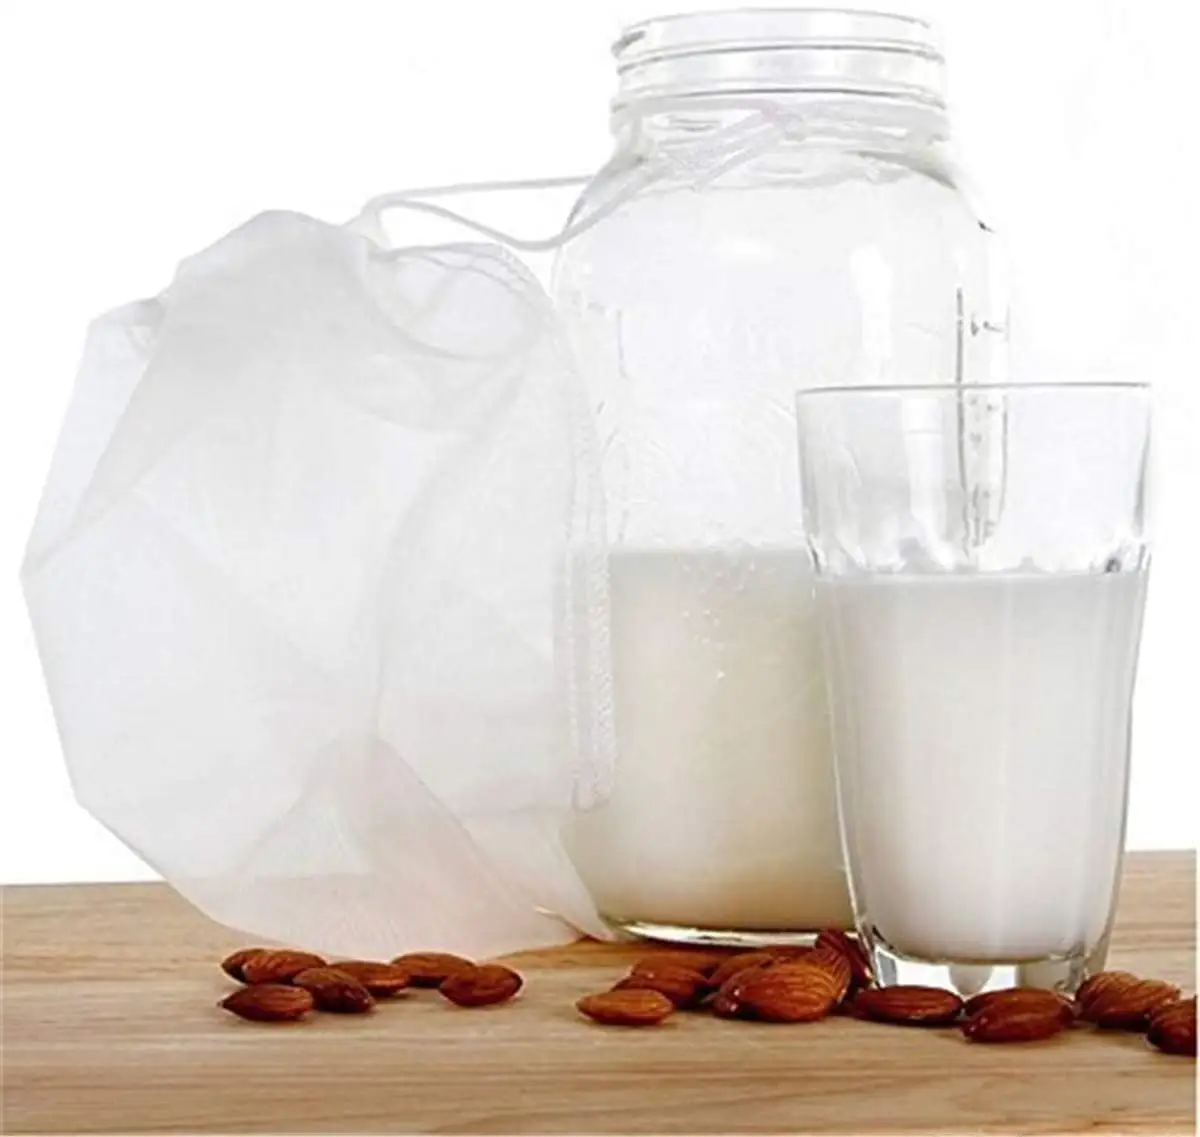 ナットミルクバッグ再利用可能なアーモンド/大豆ミルク用3パックナットバッグギリシャのヨーグルトプロフェッショナルコールドブリューコーヒーティービール